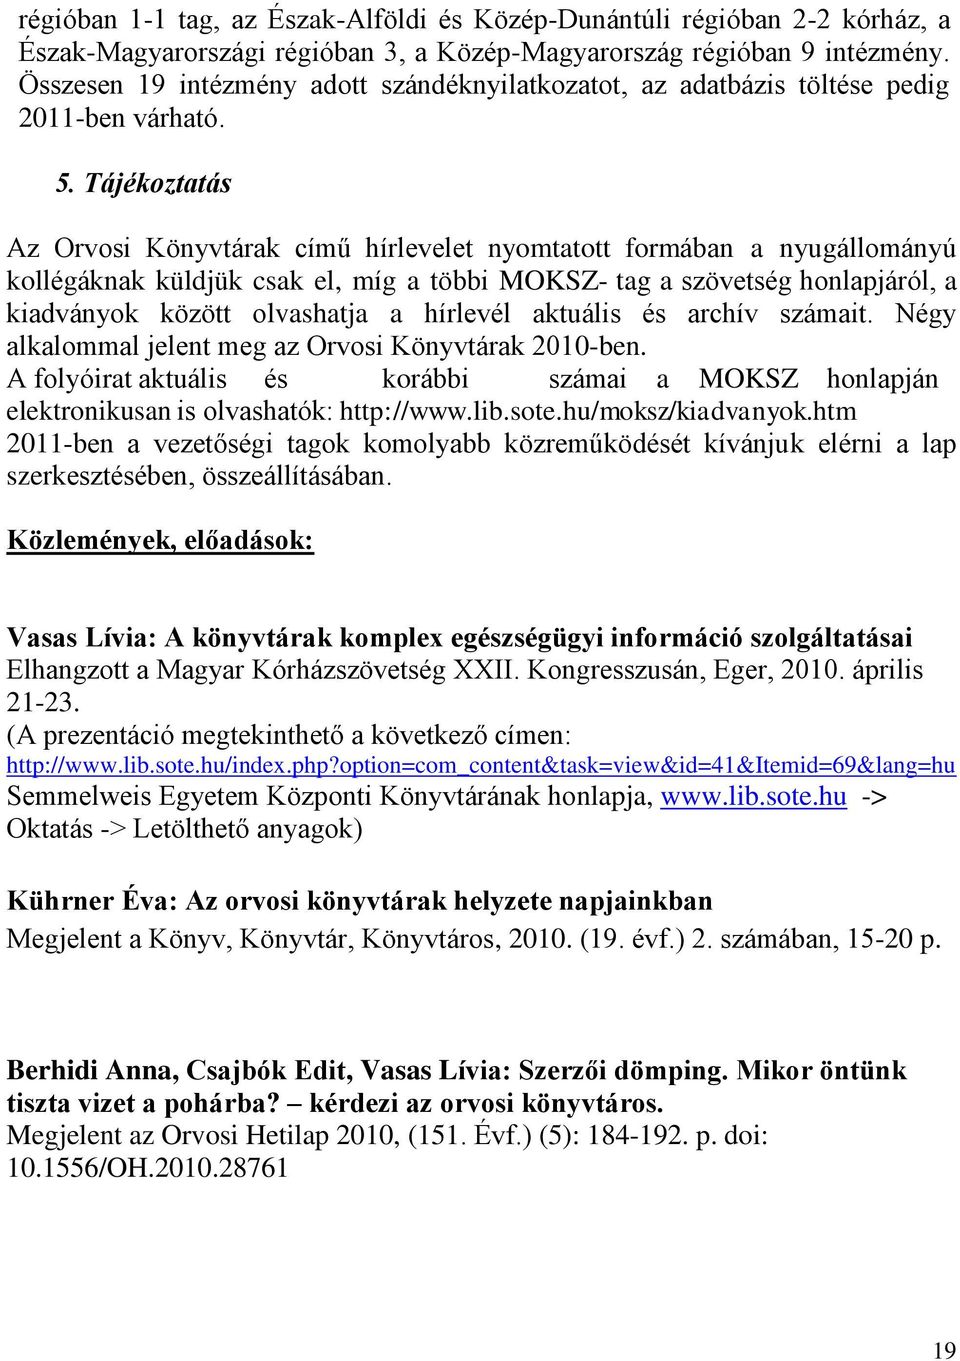 Tájékoztatás Az Orvosi Könyvtárak című hírlevelet nyomtatott formában a nyugállományú kollégáknak küldjük csak el, míg a többi MOKSZ- tag a szövetség honlapjáról, a kiadványok között olvashatja a